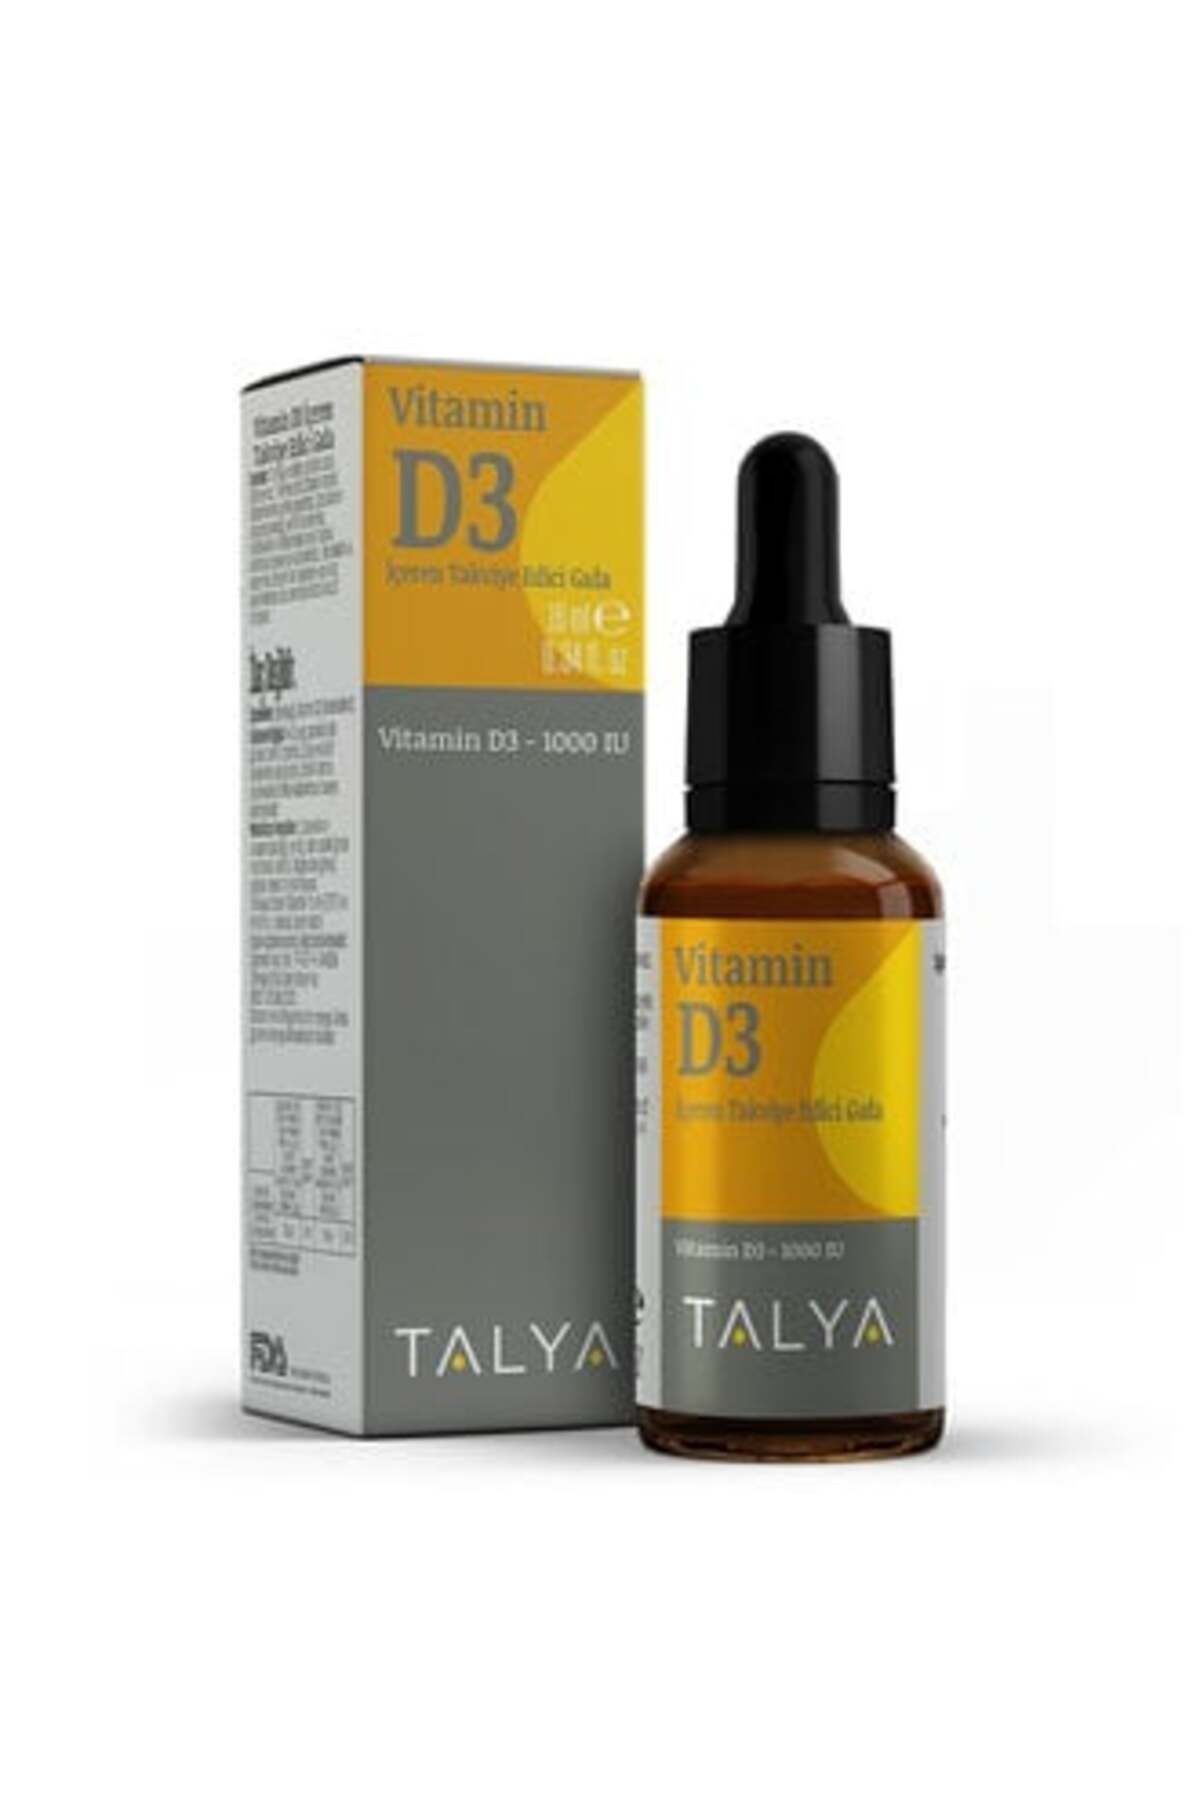 Talya Vitamin D3 İçeren Takviye Edici Gıda 10Ml ( 2 ADET )